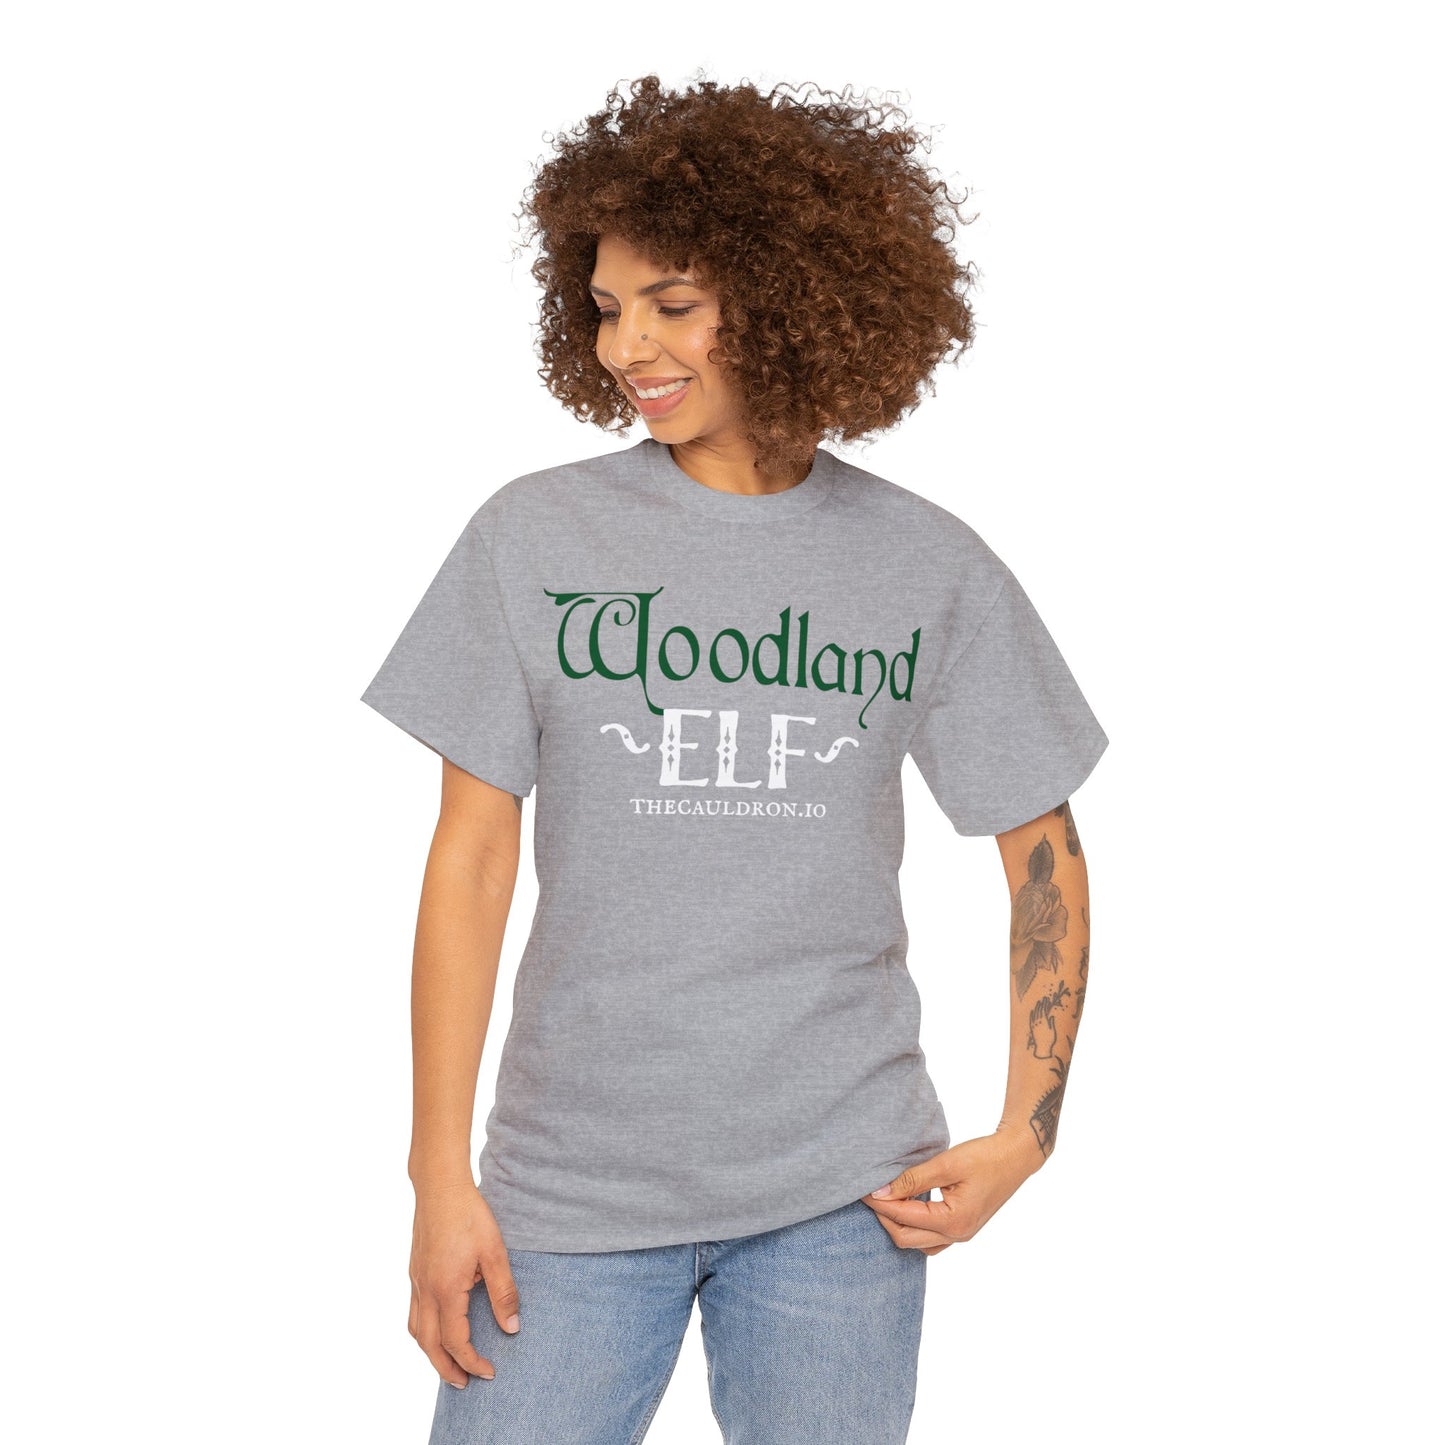 Woodland Elf Tee